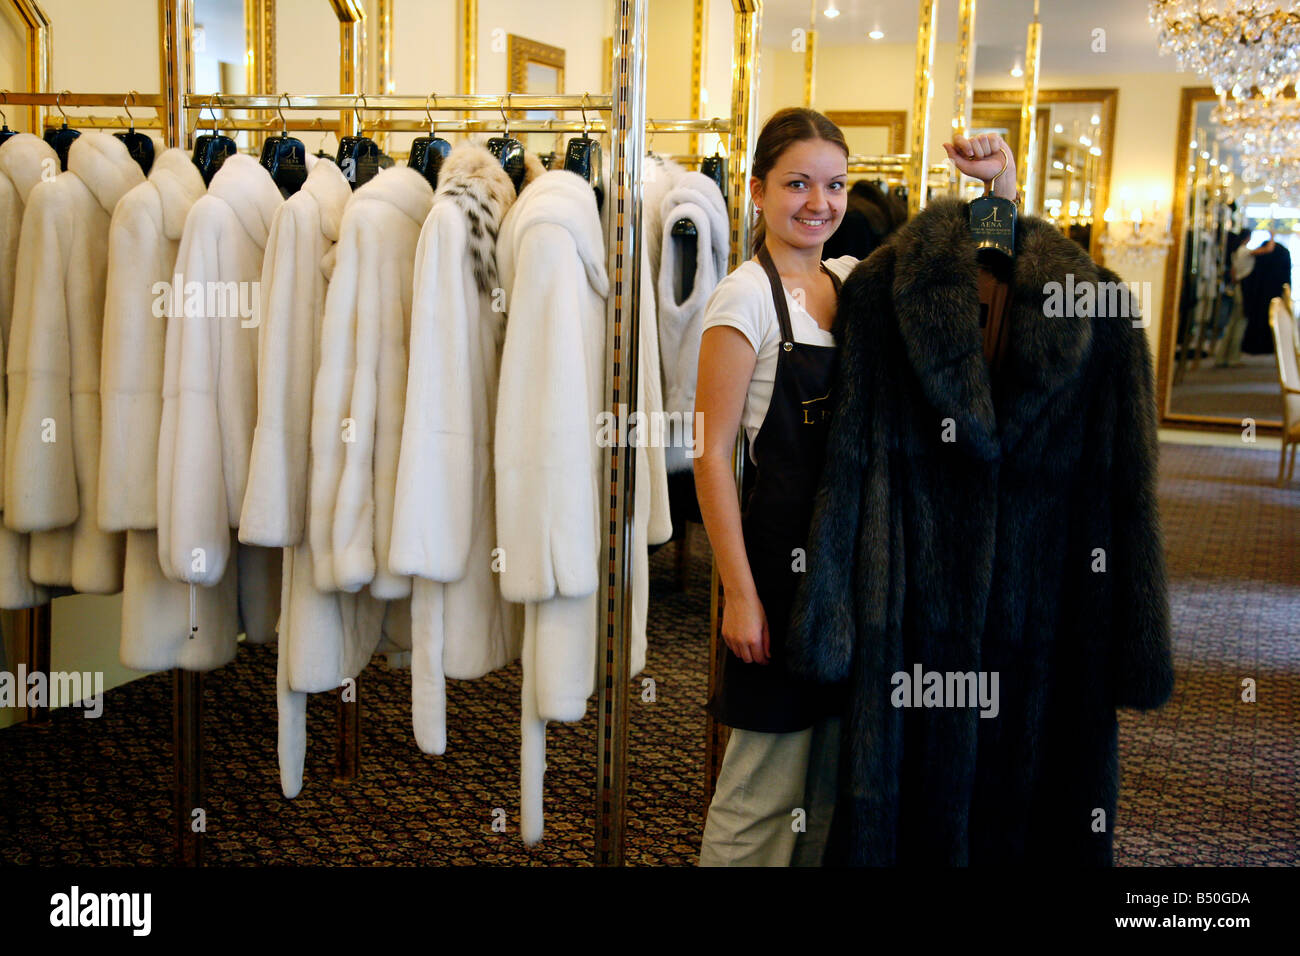 Aug 2008 - Frau hält einen Zobel Pelz kostete 300 000 Euro in der exklusiven Lena Boutique St.Petersburg Russland Stockfoto